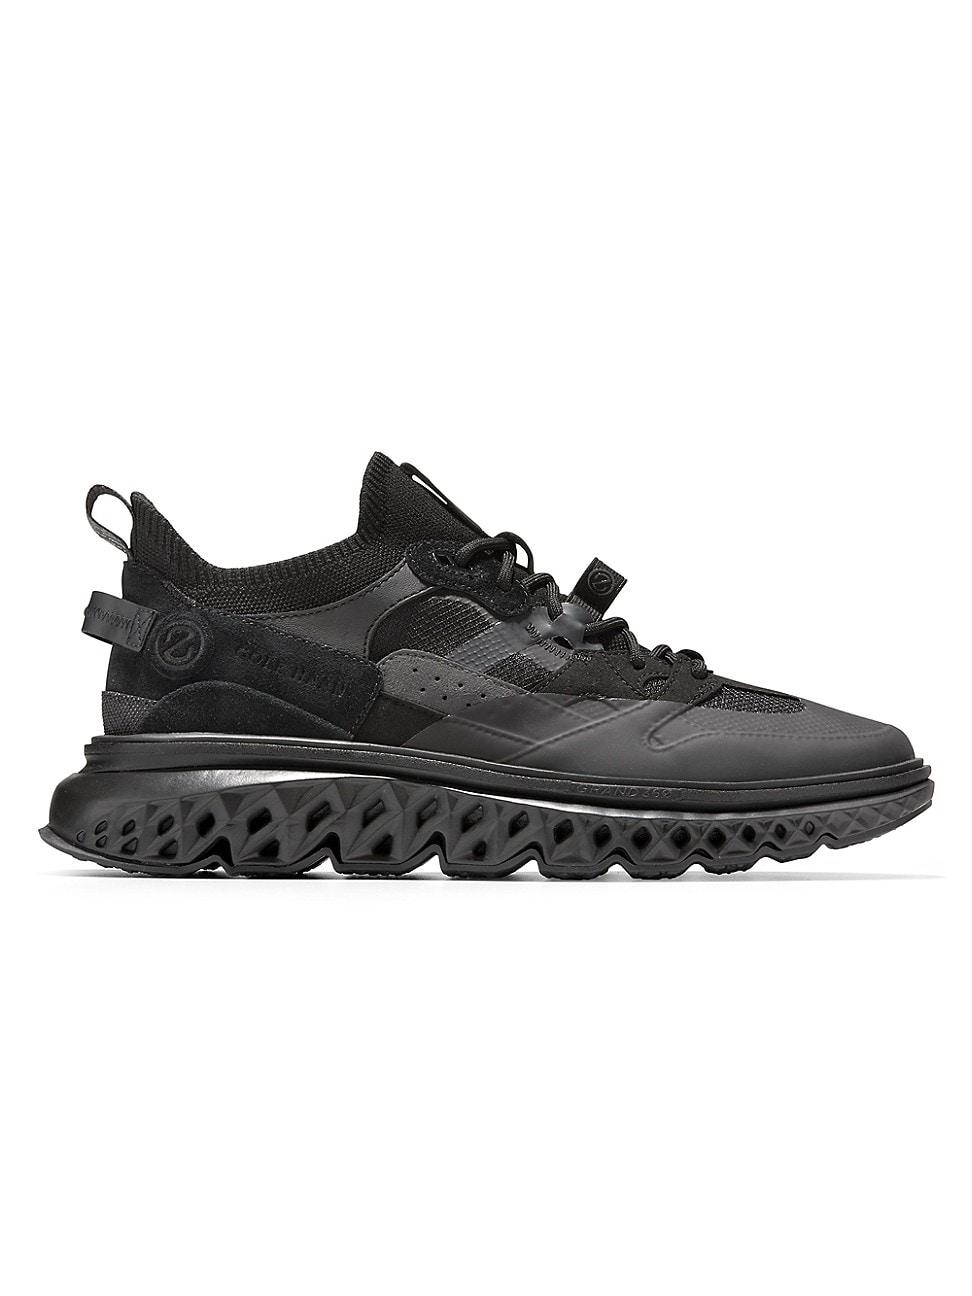 Cole Haan 5.zerogrand Wrk Low-top Sneakers in Black for Men | Lyst